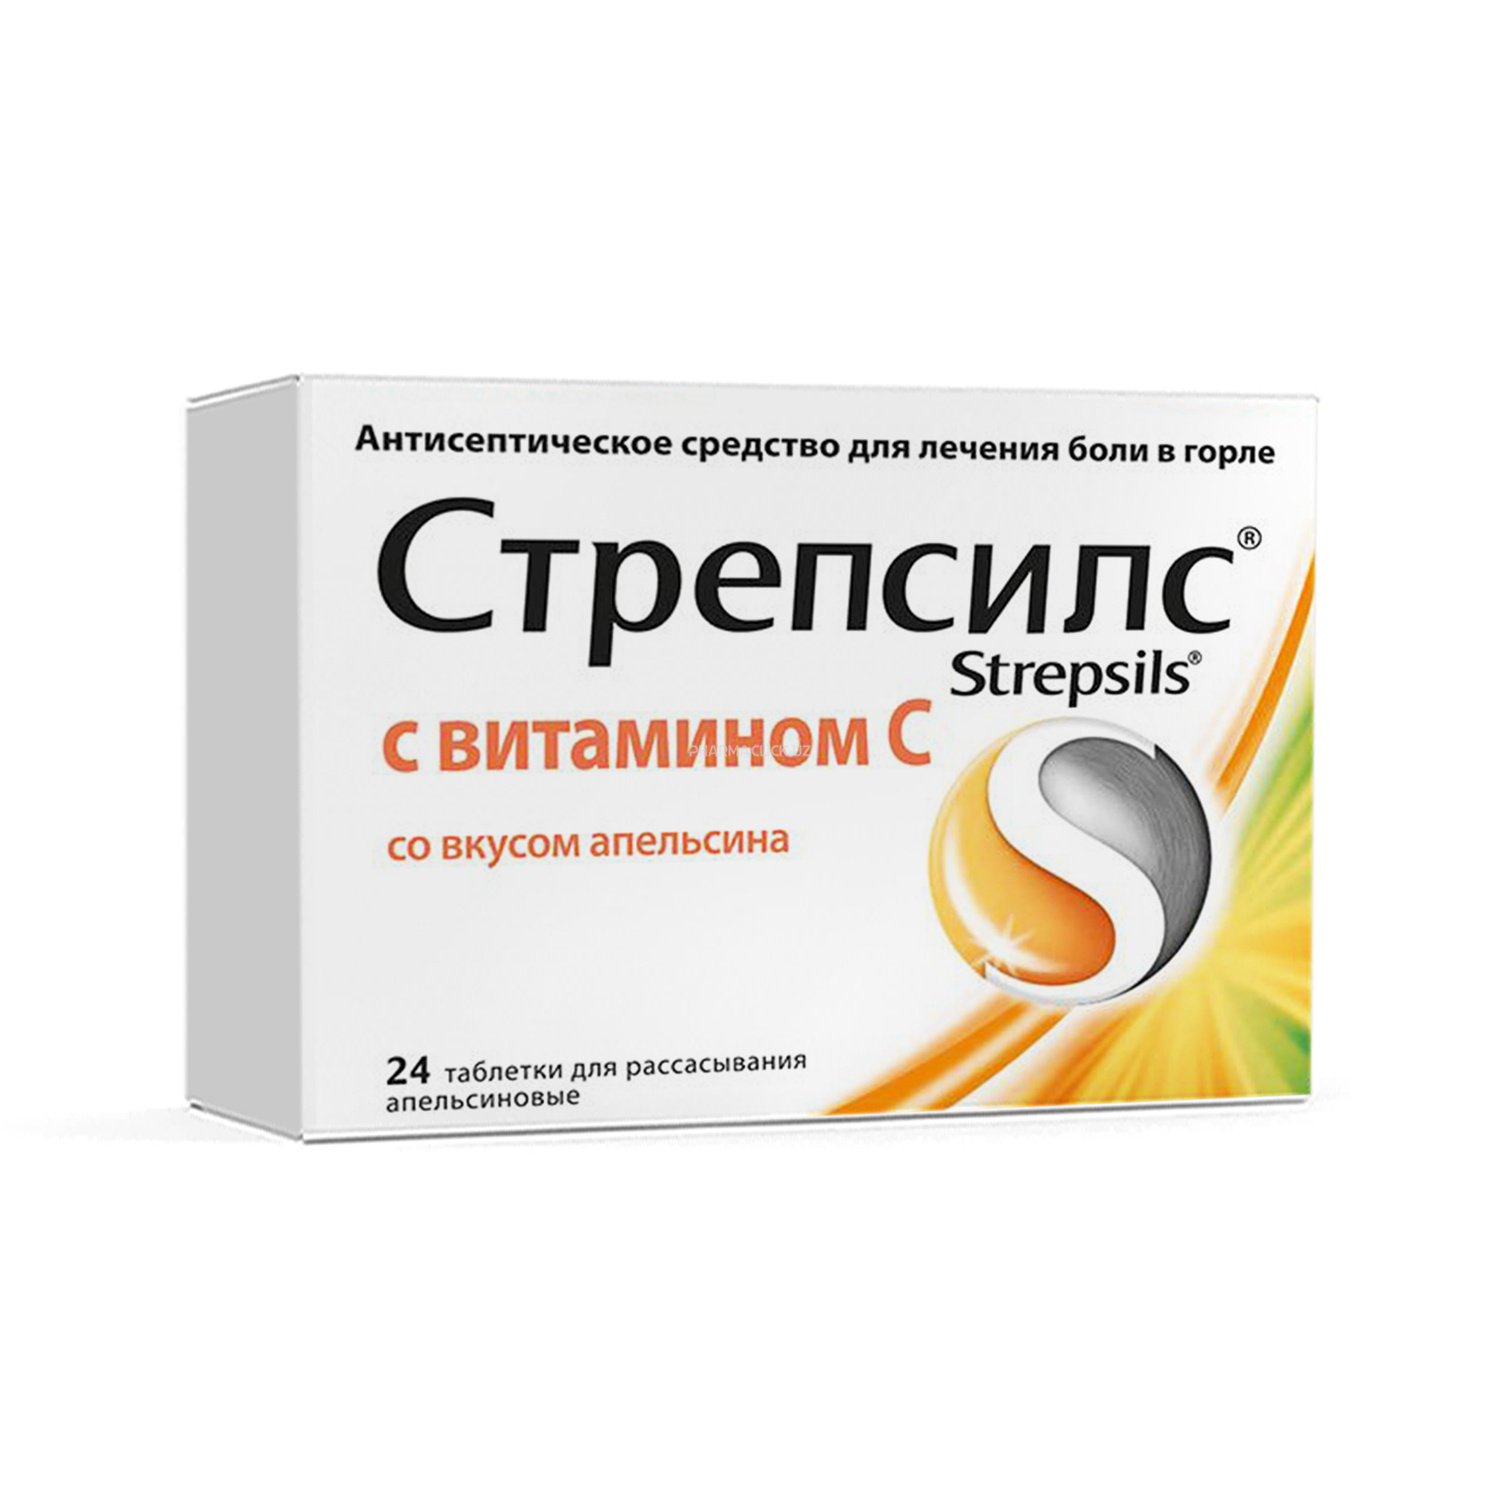 Strepsils shimish uchun tabletkalar apelsinli vitamin C bilan №24